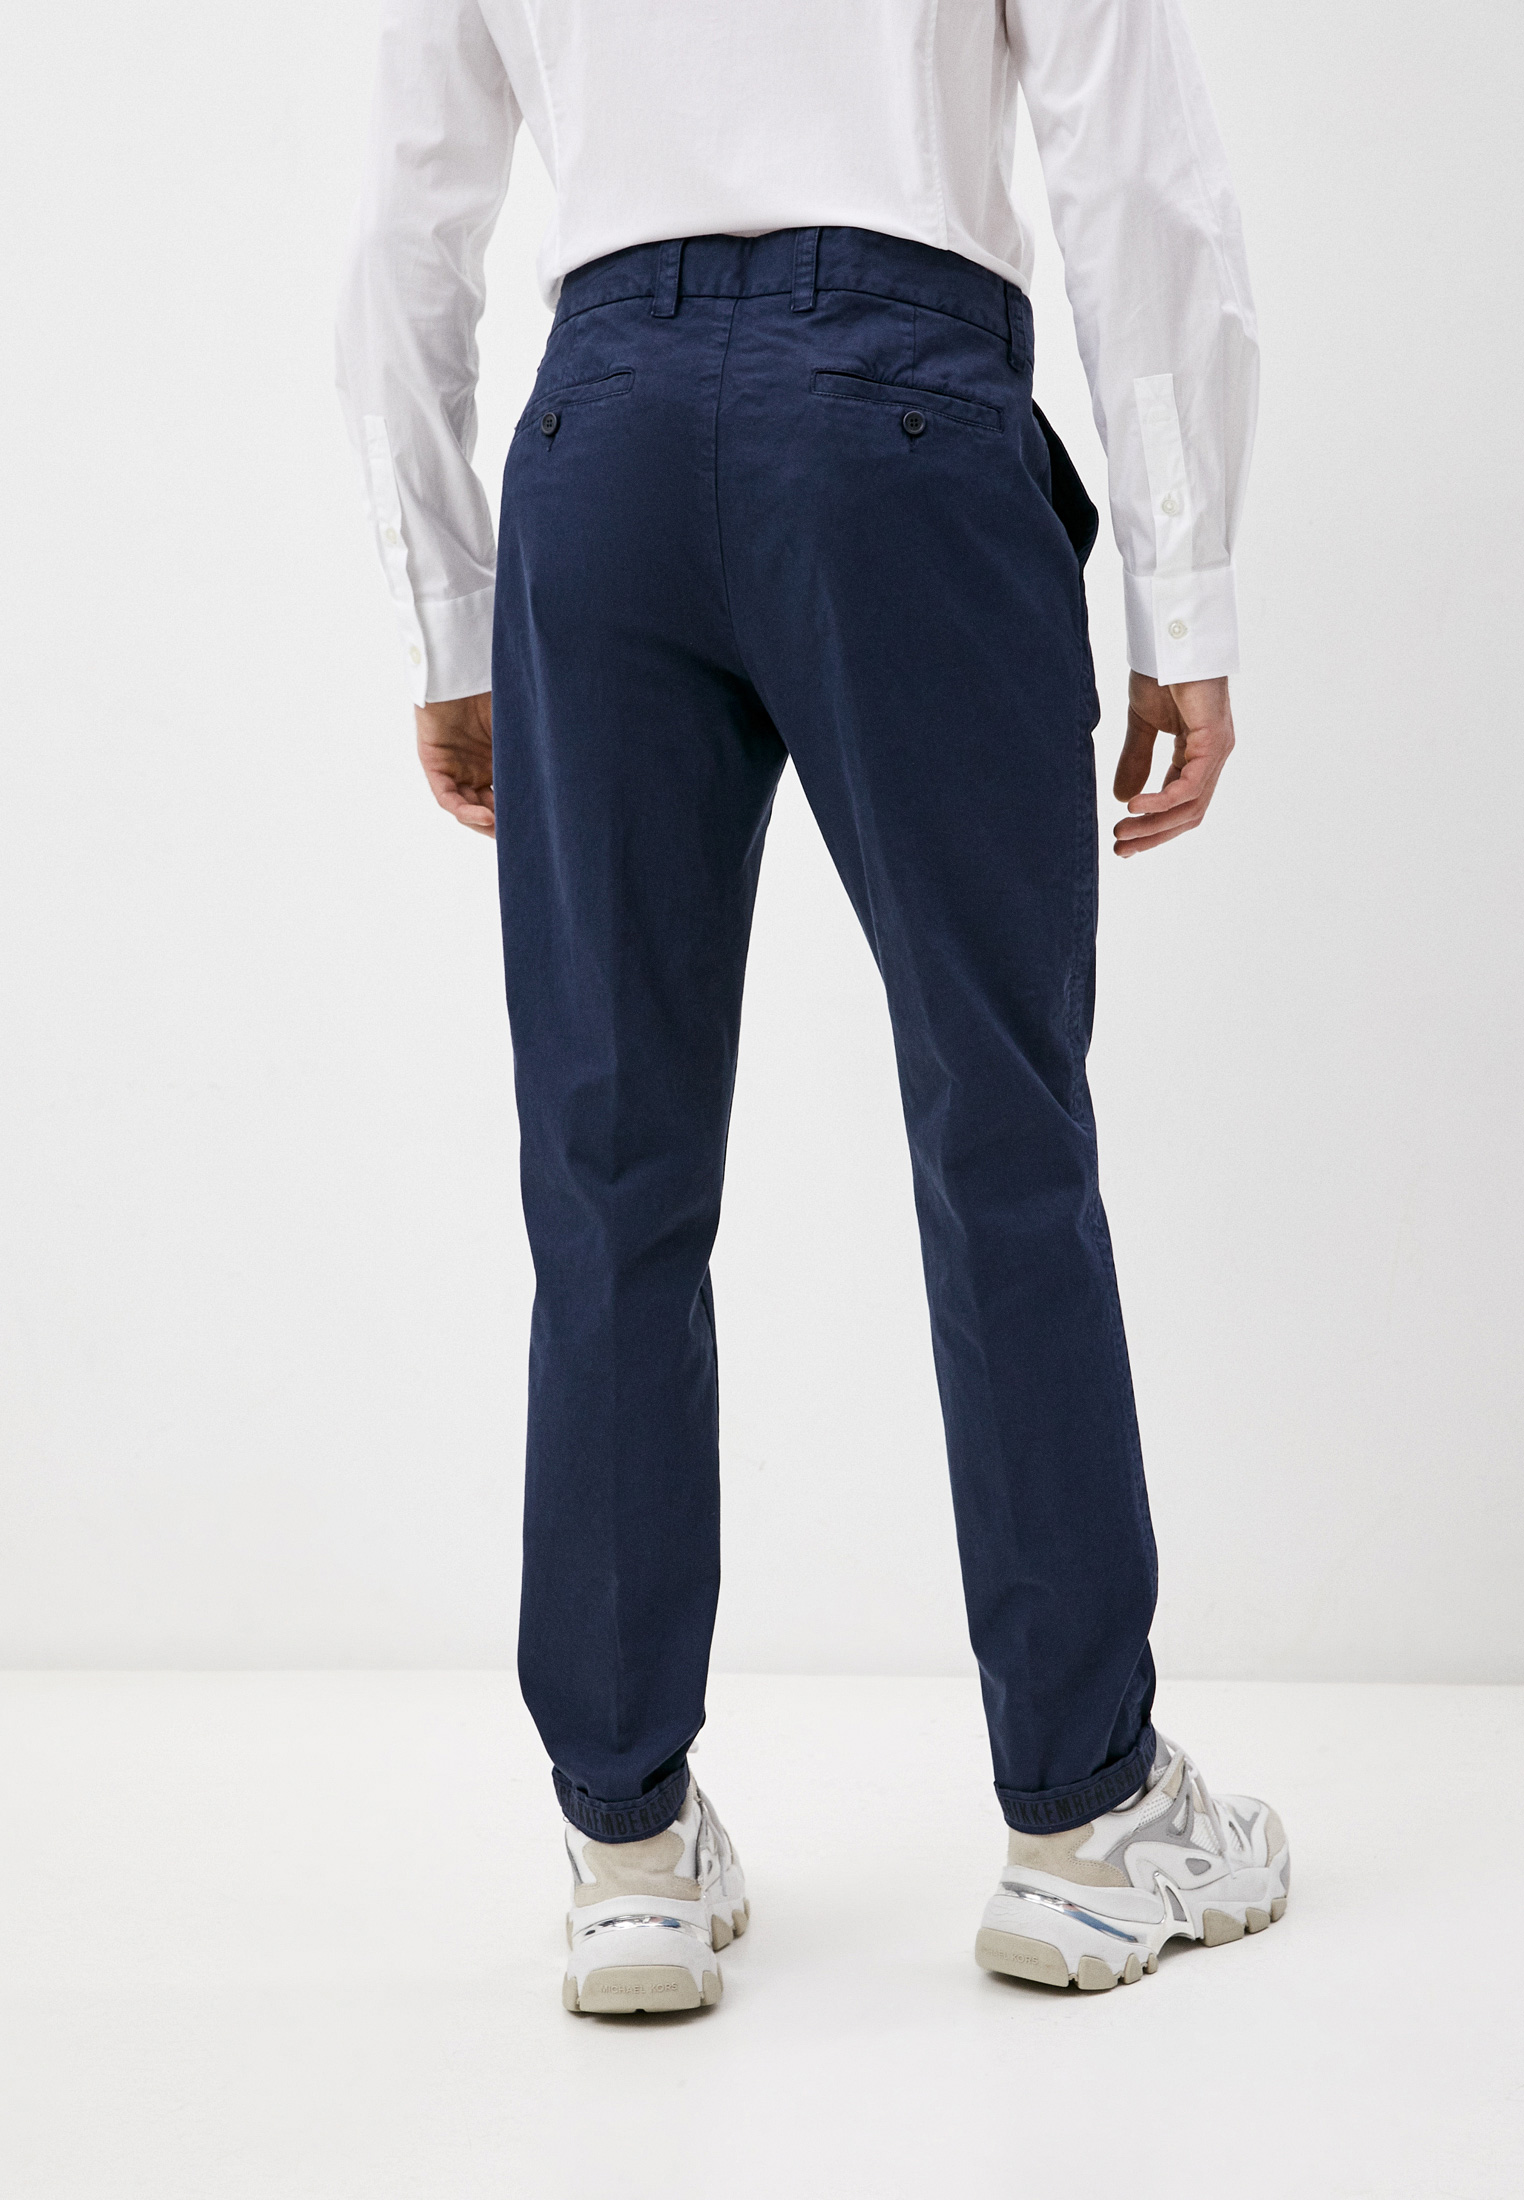 Мужские повседневные брюки Bikkembergs (Биккембергс) CP05100S3390Y91: изображение 4